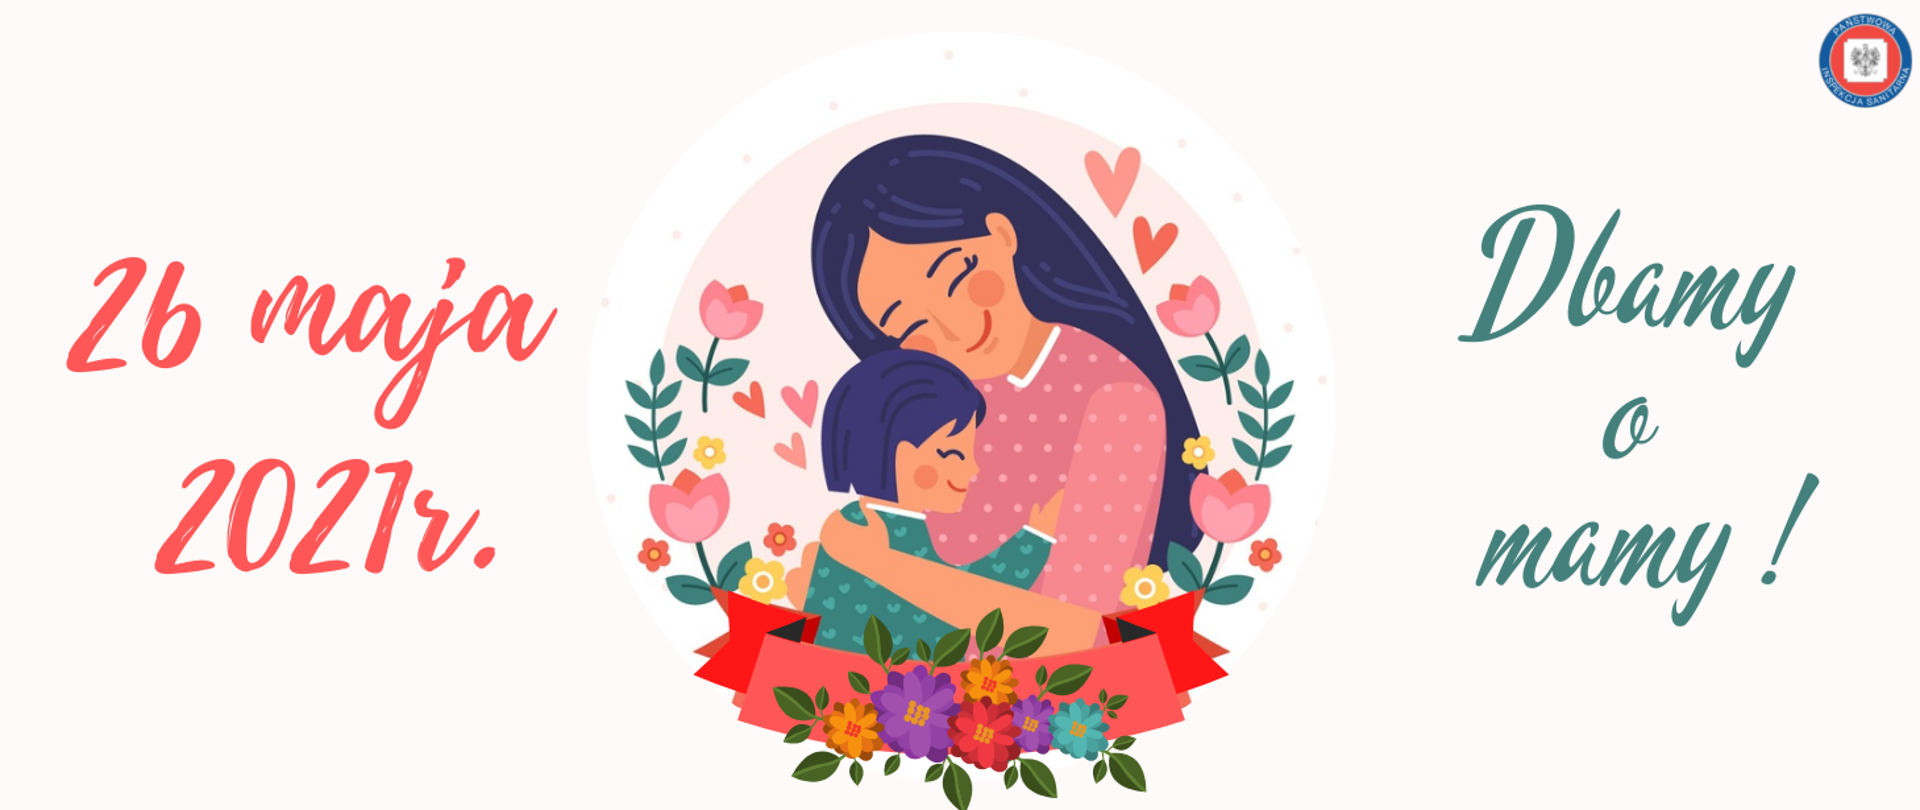 Grafika zawiera w centralnej części wizerunek uśmiechniętej kobiety – matki, tulącej do piersi dziecko. Osoby w otoczeniu kolorowych kwiatów i serc.
Po lewej stronie znajduje się data: 26 maja 2021 r., skrajnie po prawej stronie hasło: Dbamy o mamy!
W prawym, górnym rogu występuje logo Państwowej Inspekcji Sanitarnej (Obramowanie w kolorze granatowym, na którym umieszczony jest napis Państwowa Inspekcja Sanitarna).